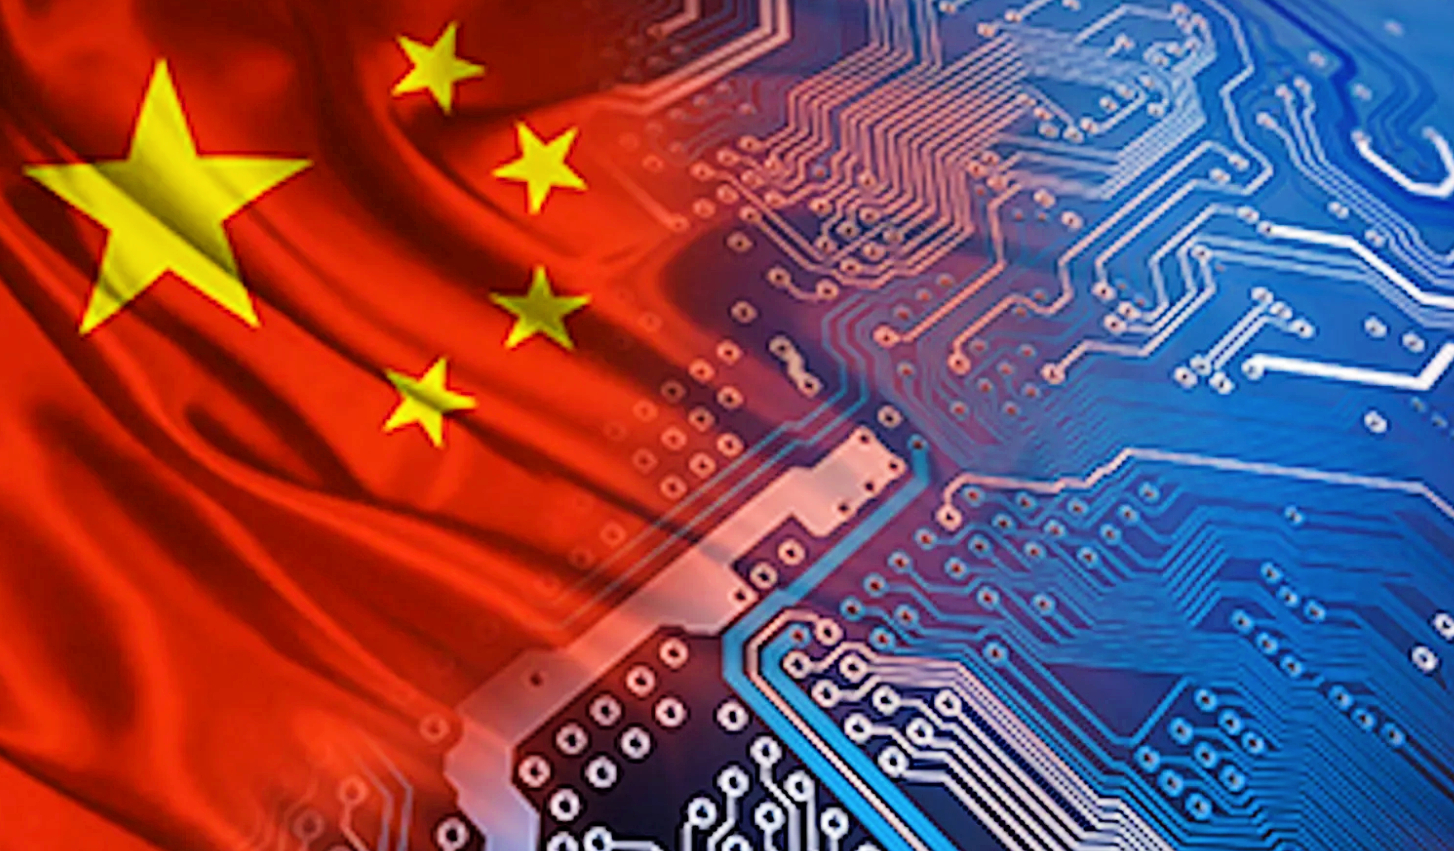 China's digital footprint is sprawling worldwide